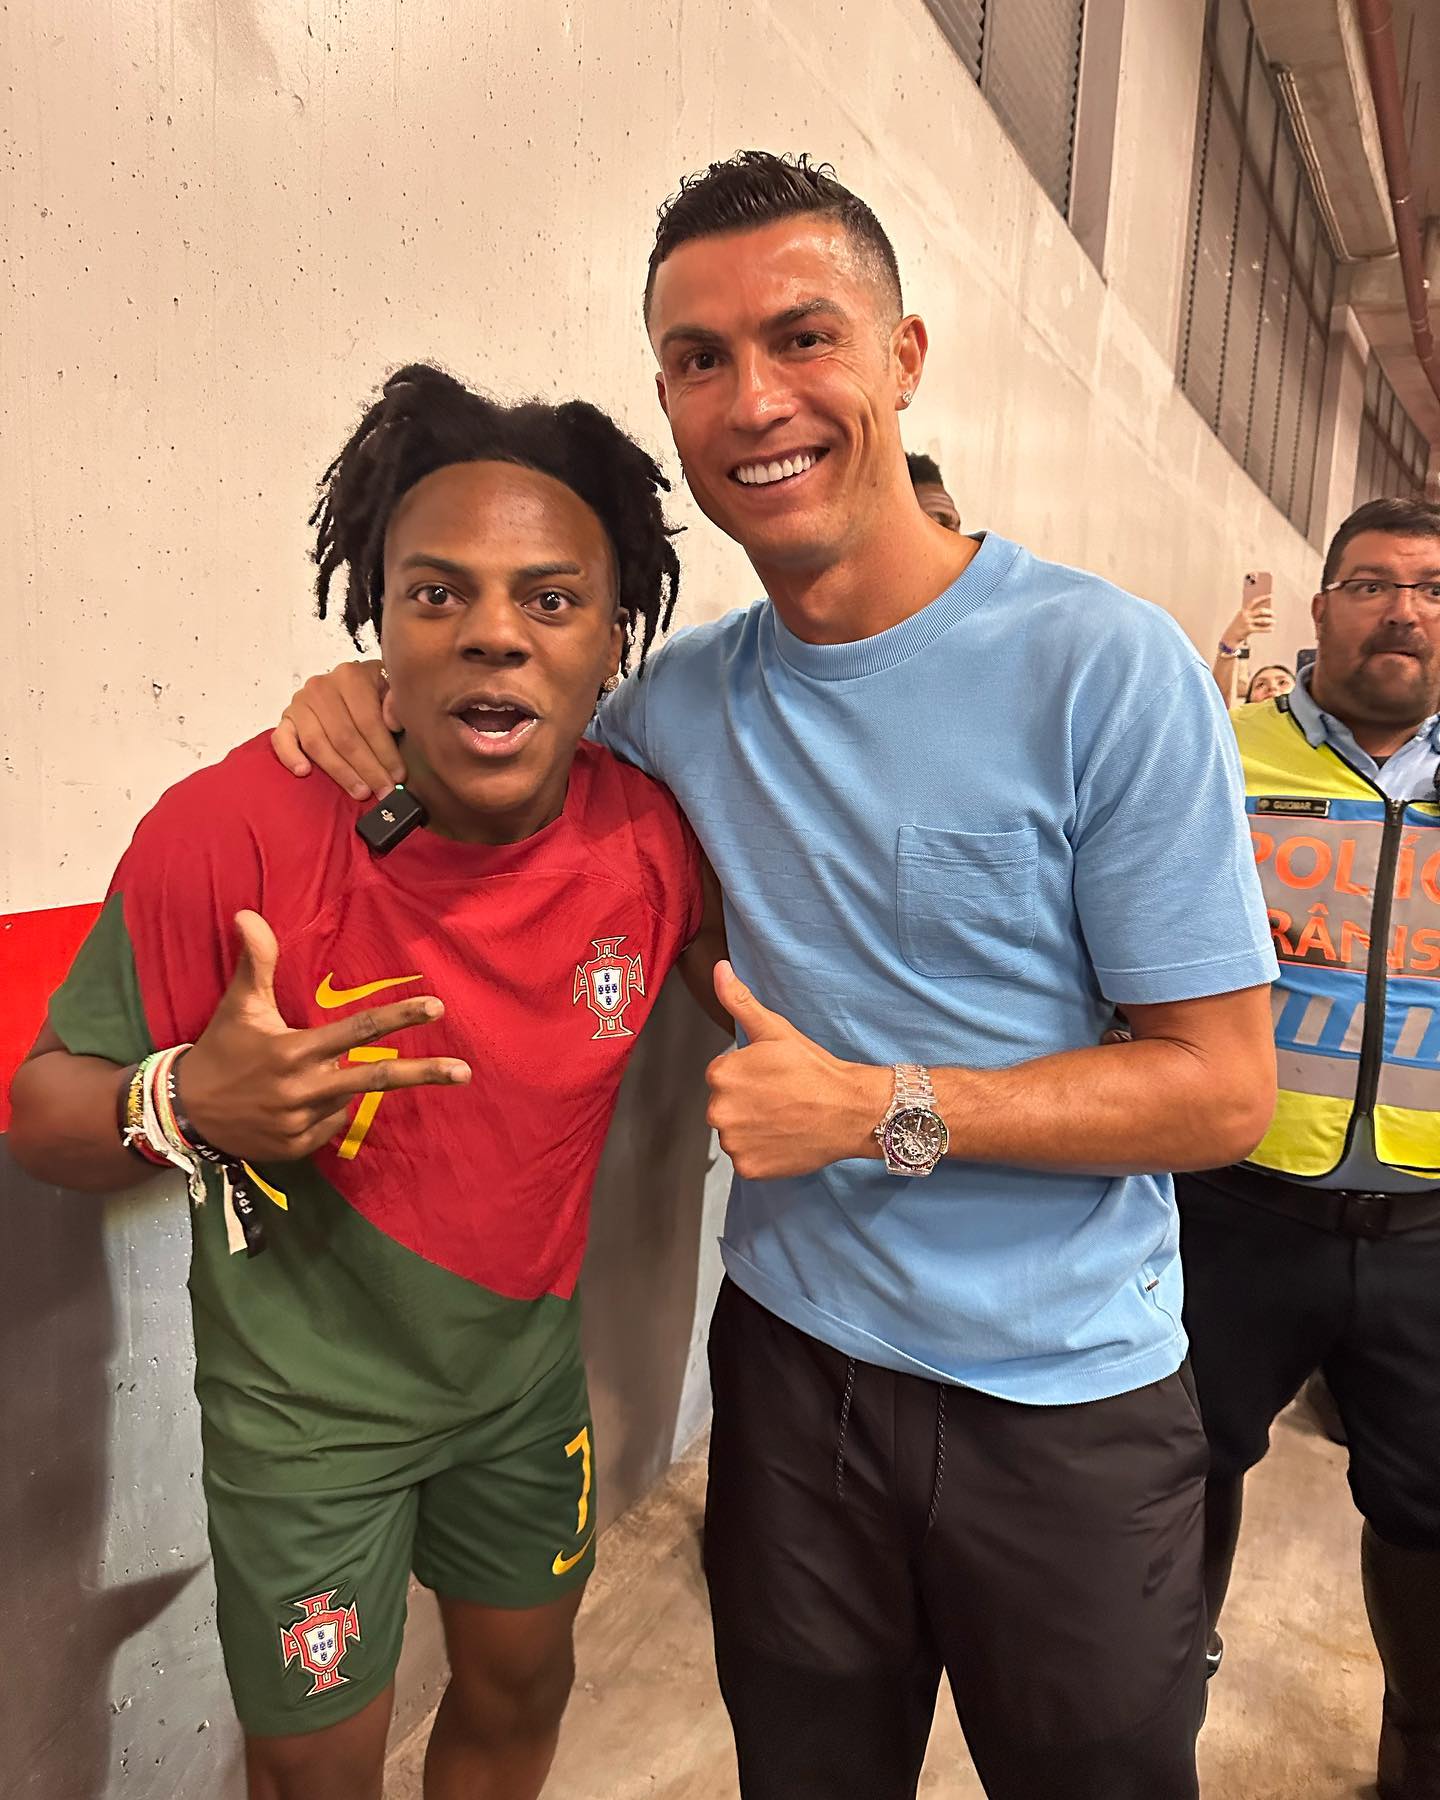 O ENCONTRO ACONTECEU! Speed e Cristiano Ronaldo se conheceram